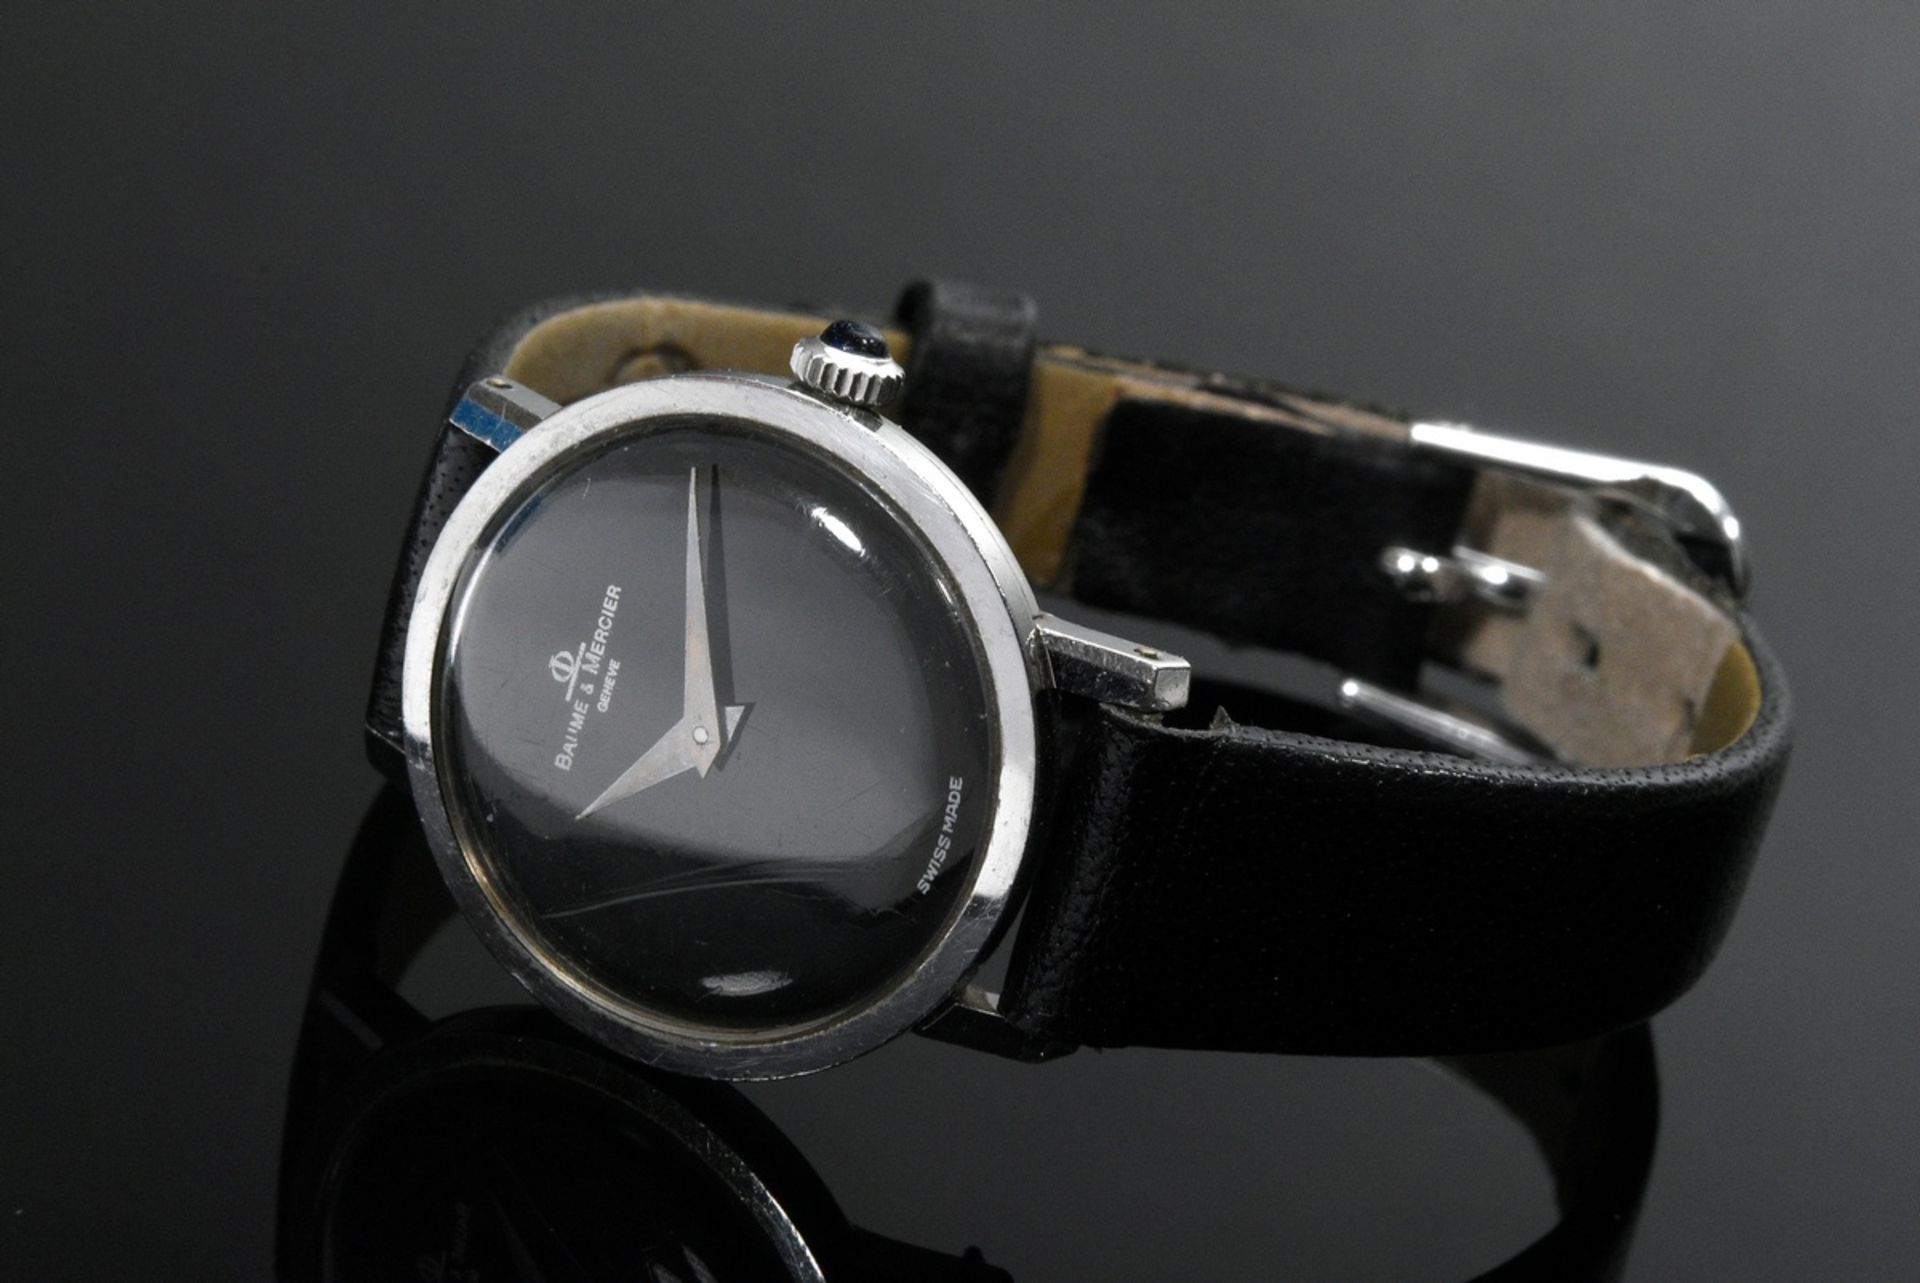 Weißgold 750 Armbanduhr "Baume & Mercier", Handaufzug, rundes Gehäuse, Boden aufgedrückt, schwarzes